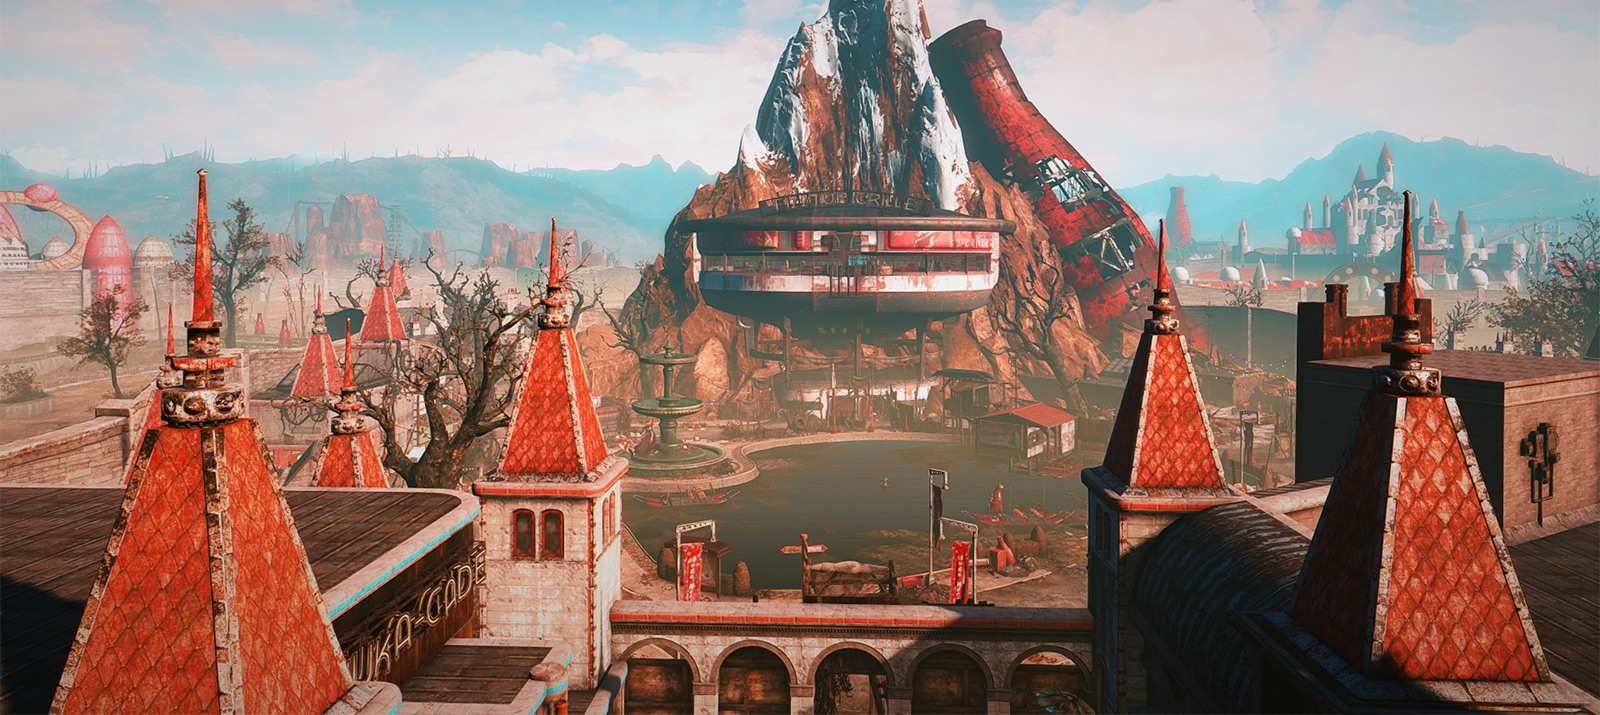 Fallout 4 nuka world settlements фото 65